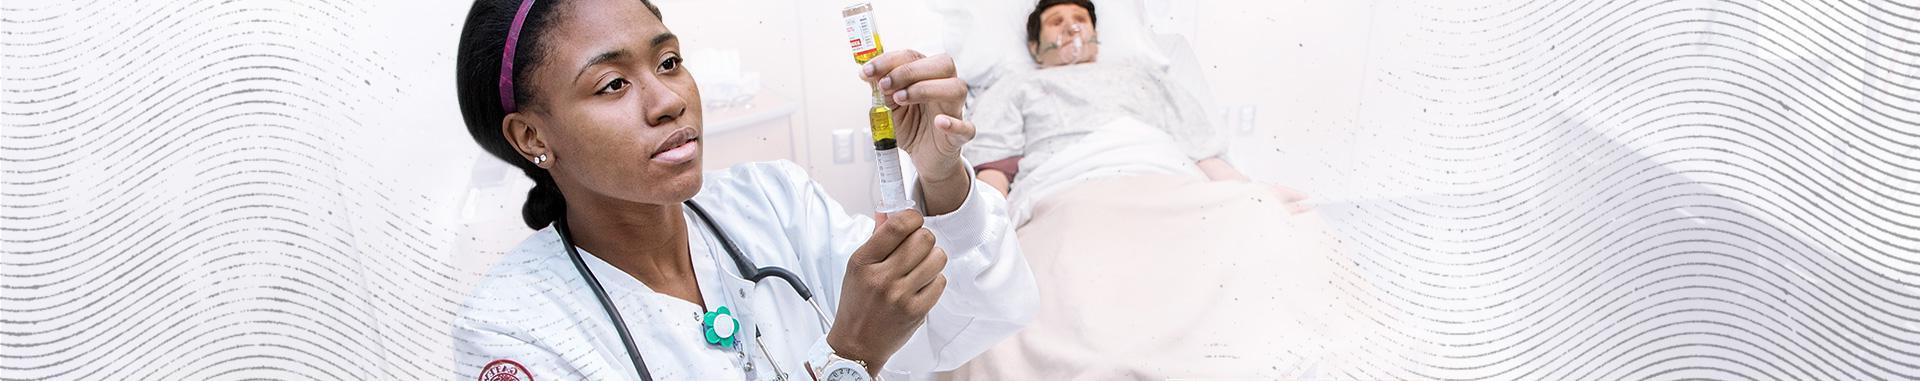 威斯康星技术学院的护理系学生在医院病房工作，背景是床上的假人